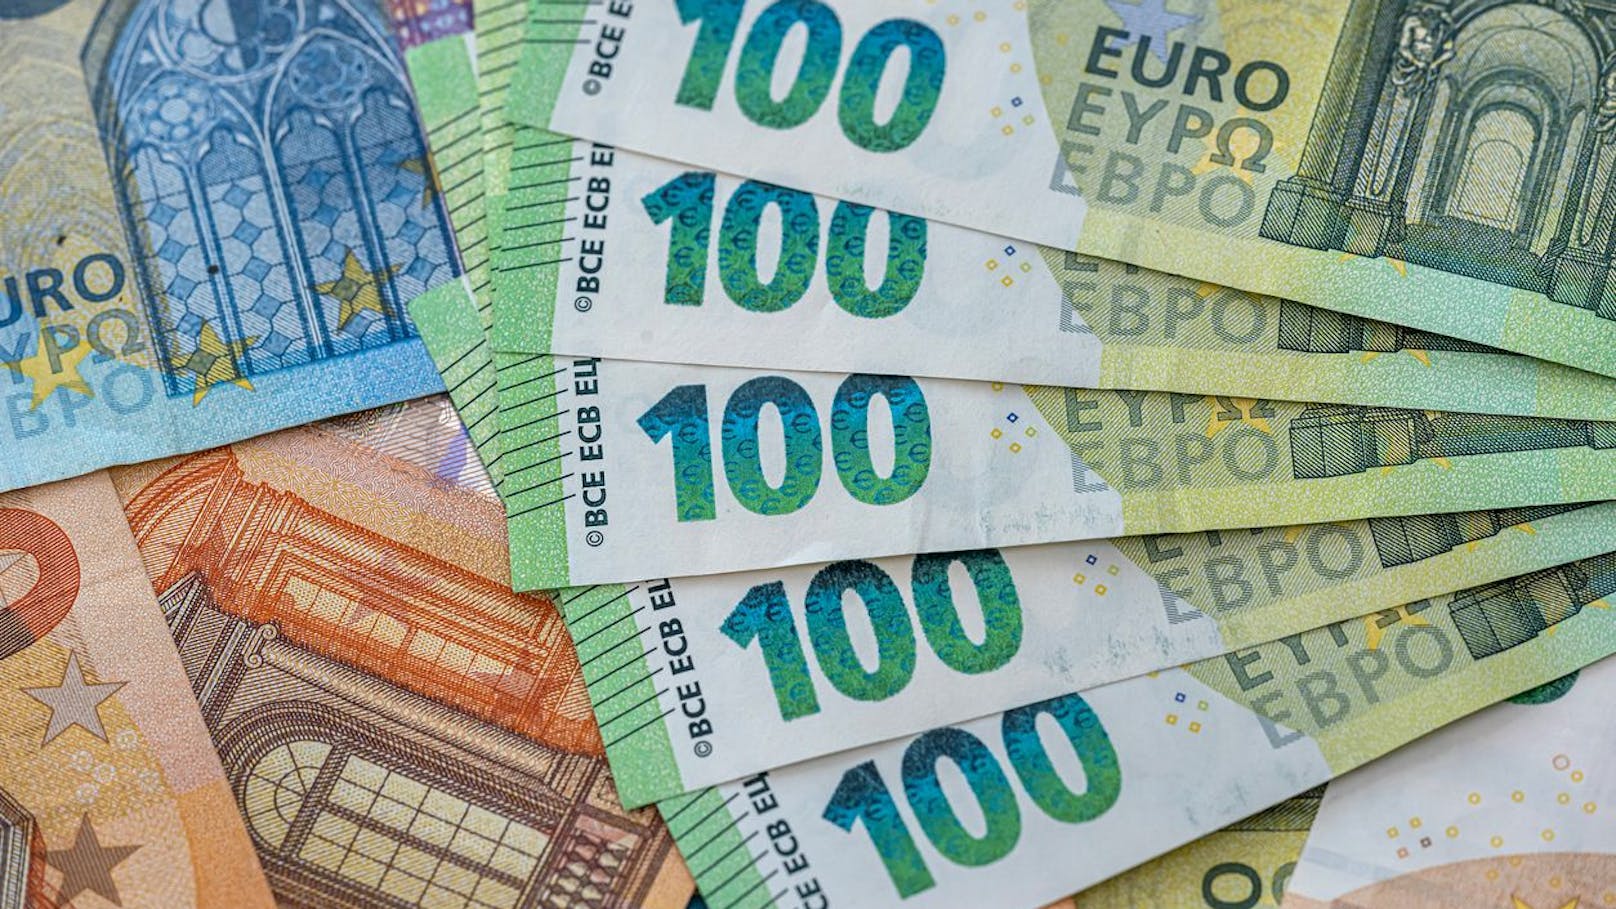 Niederösterreicher ist plötzlich um 2 Mio. Euro reicher